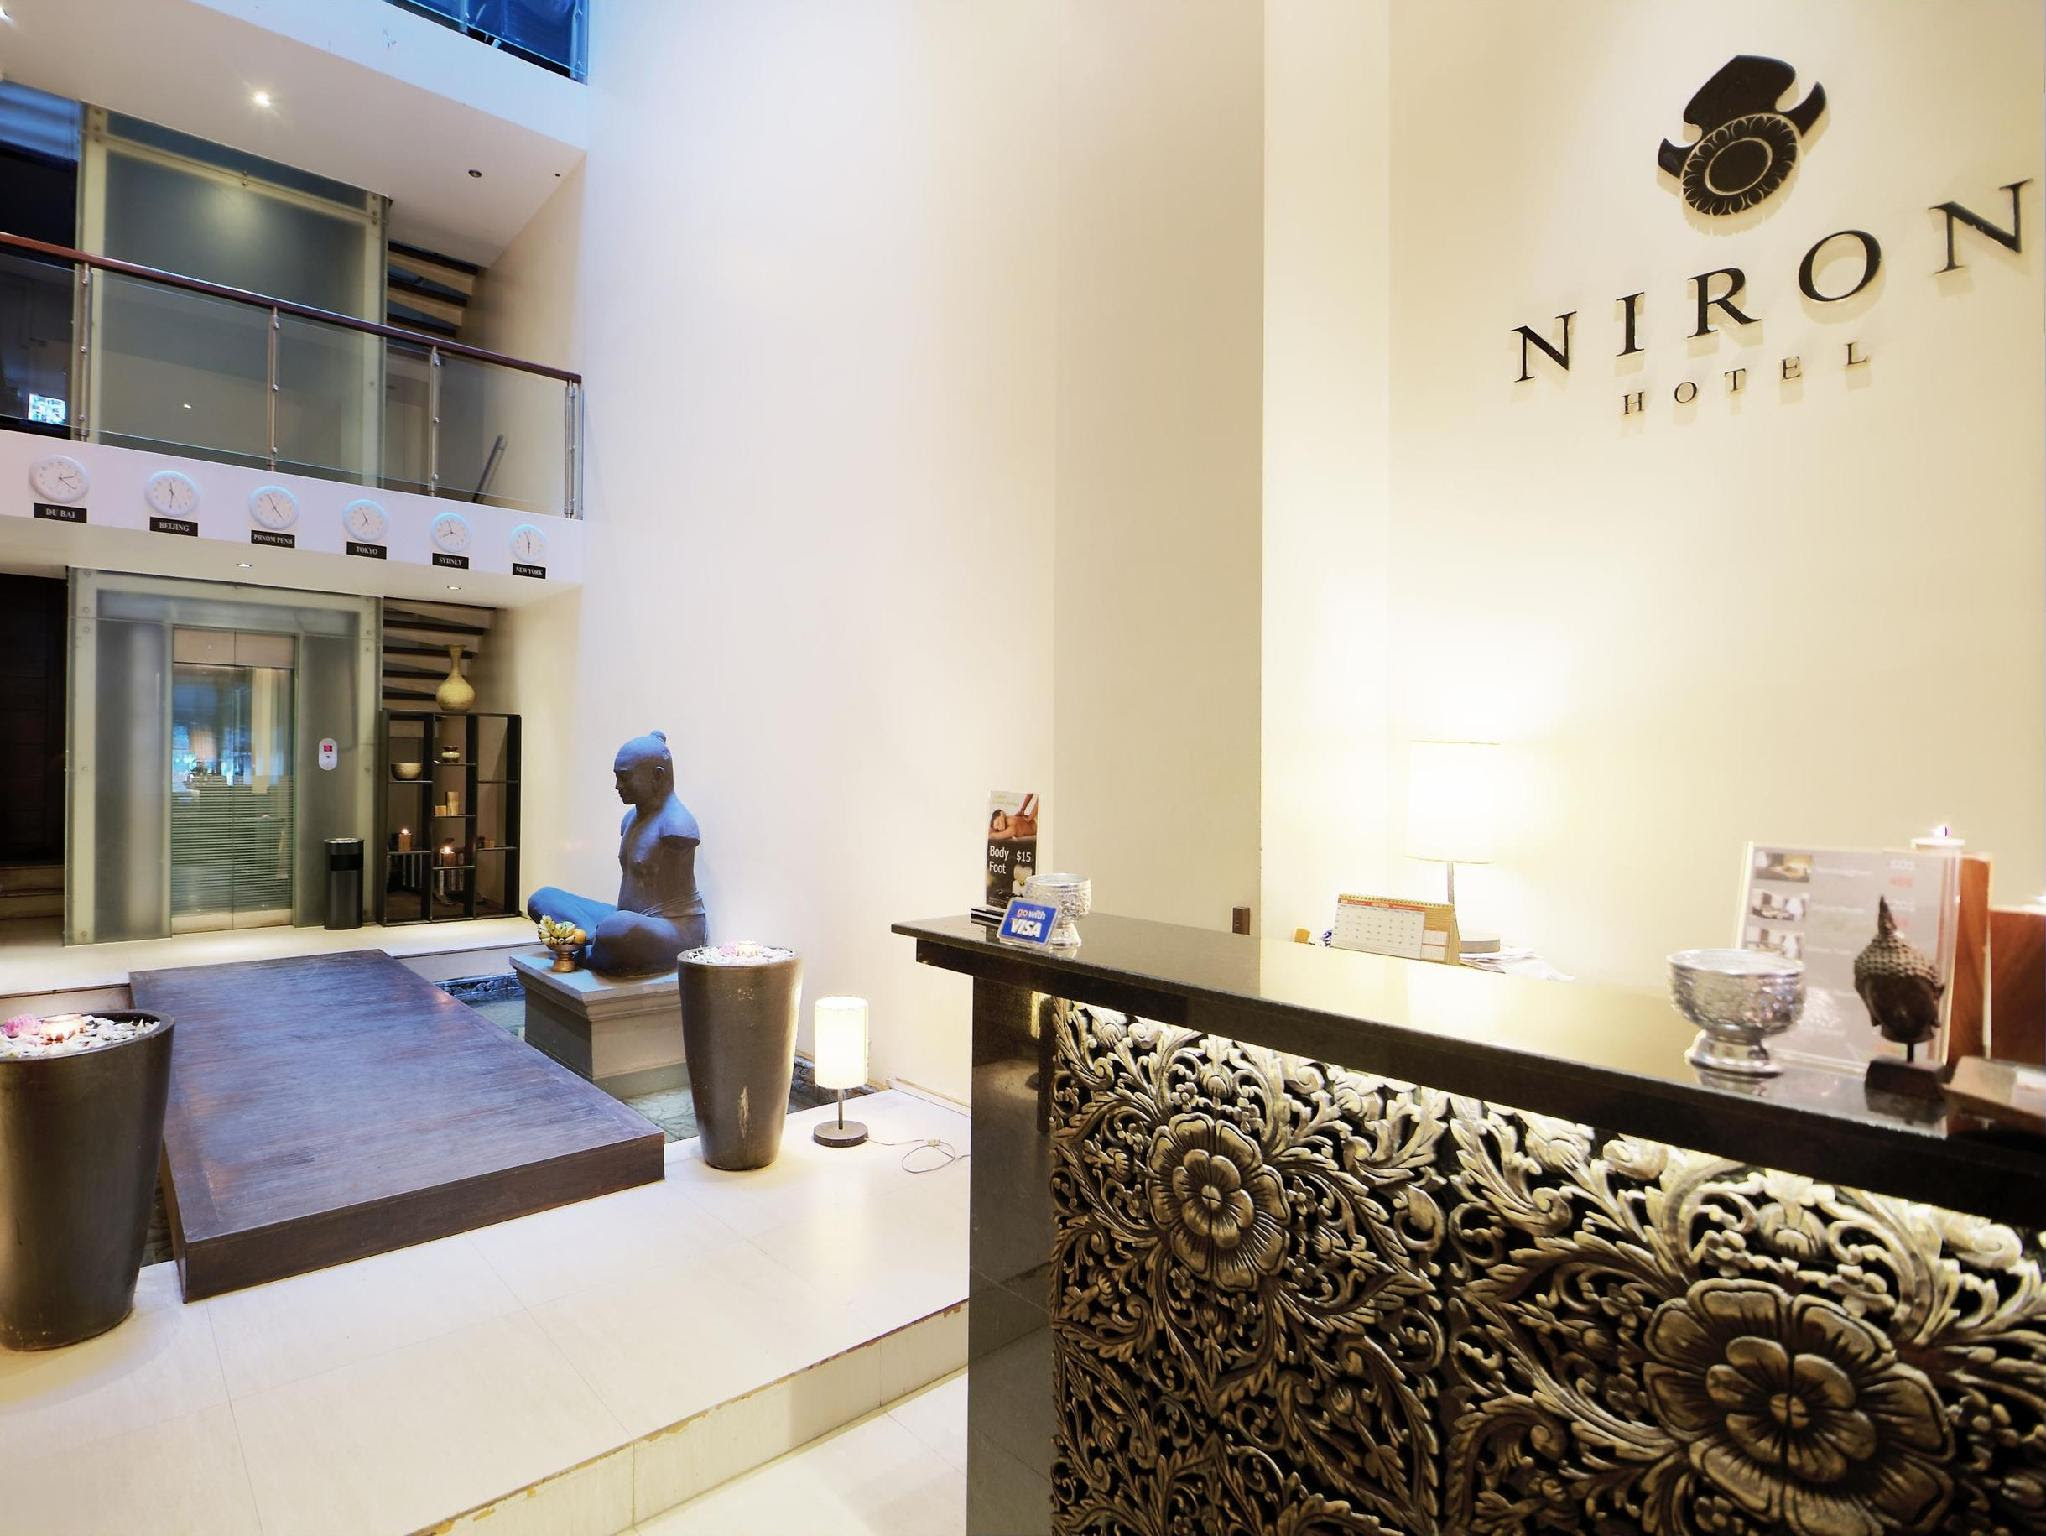 Niron Boutique Hotel Reviews